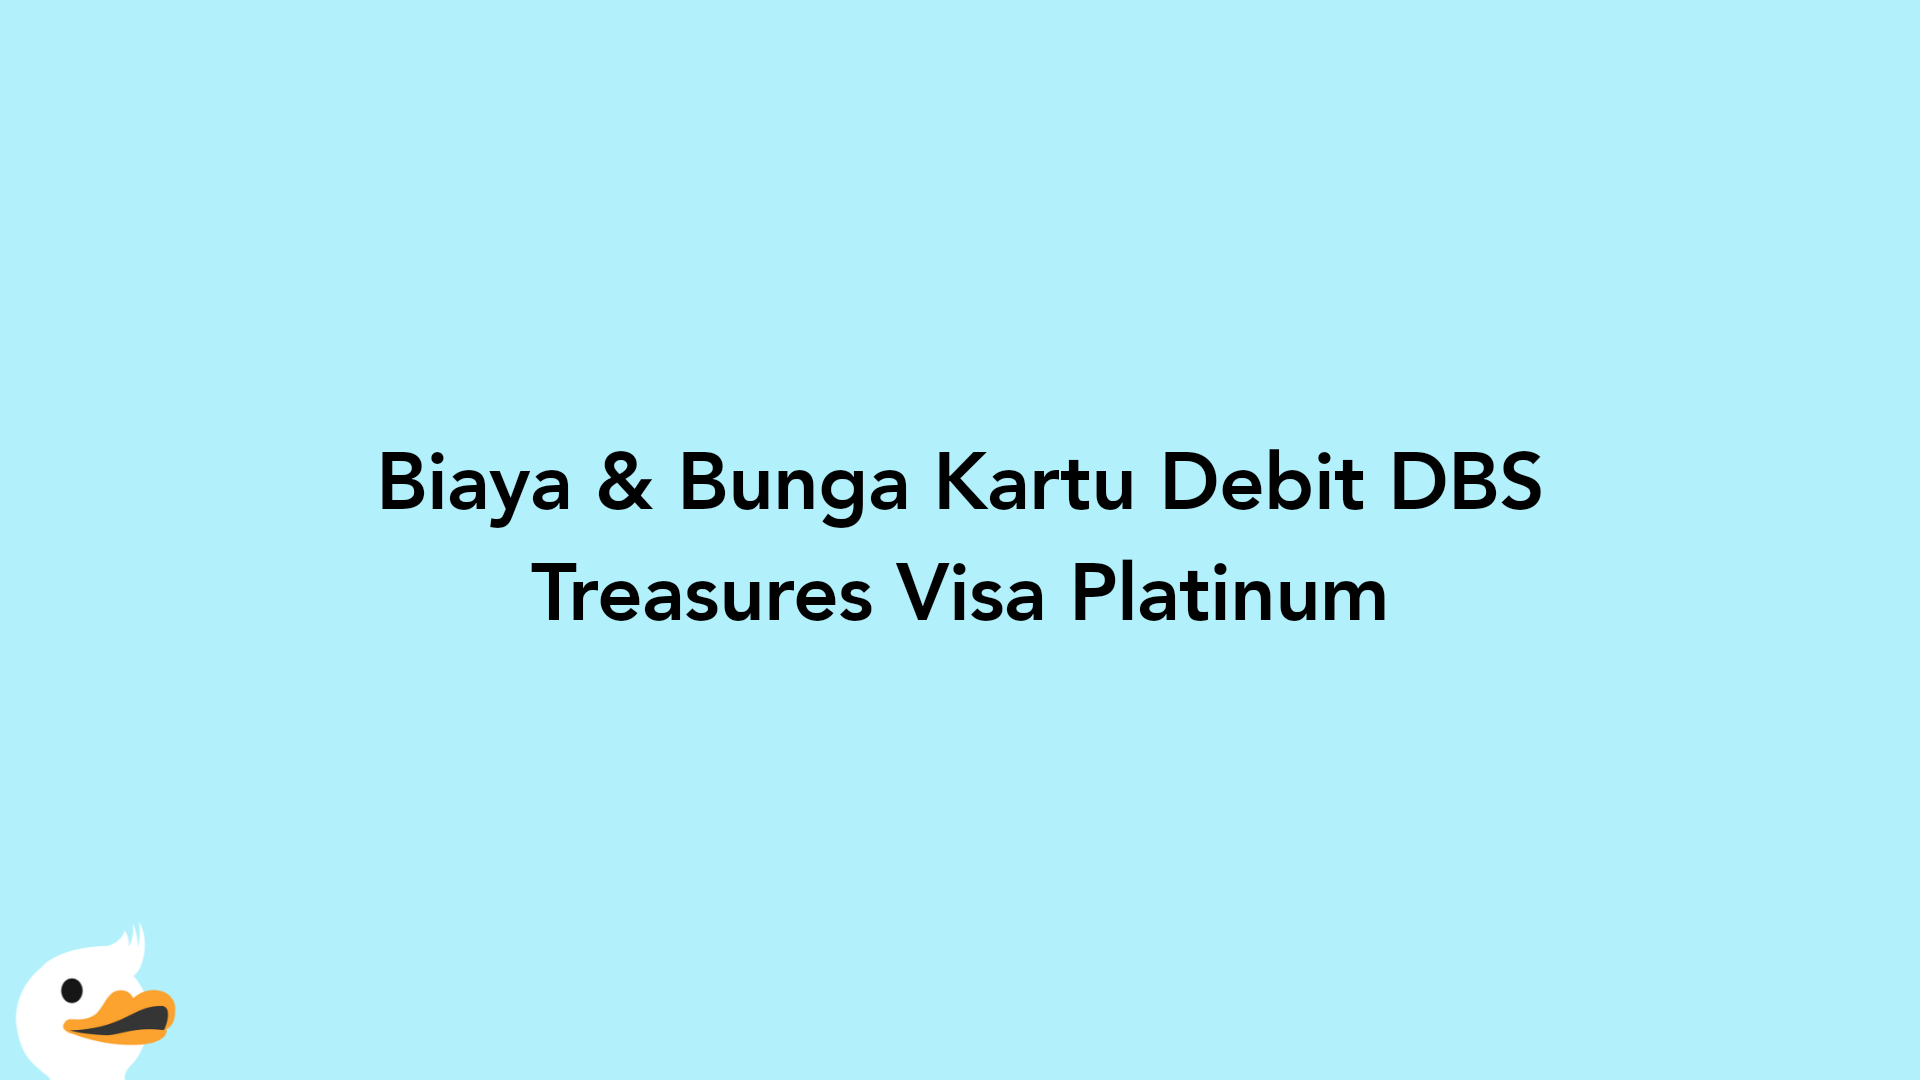 Biaya & Bunga Kartu Debit DBS Treasures Visa Platinum